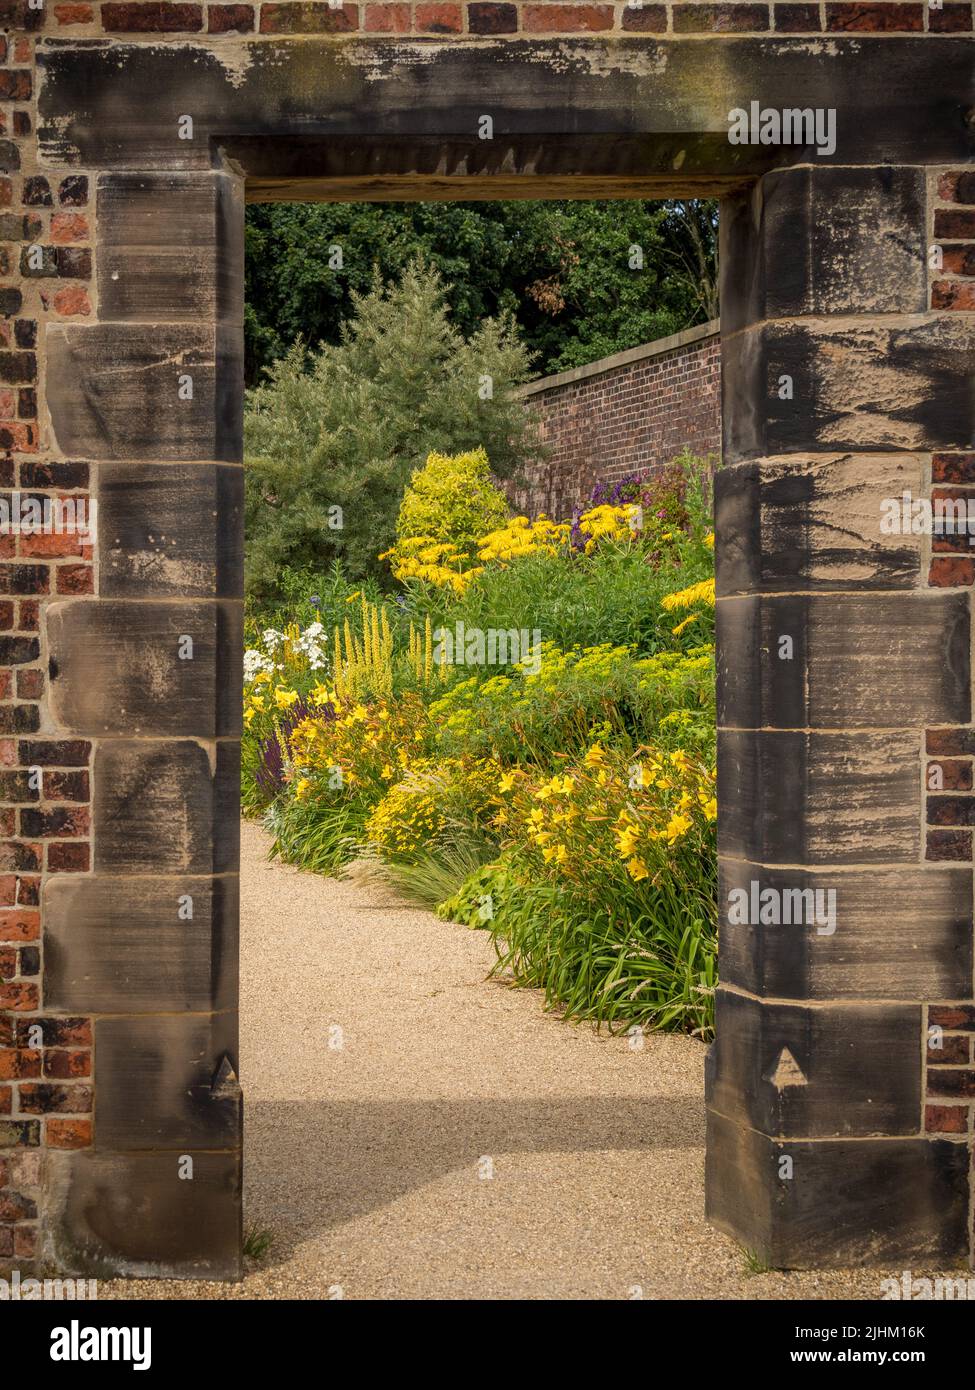 Mirando a través de una abertura en la pared en el jardín del paraíso de RHS Bridgewater en Salford. REINO UNIDO Foto de stock